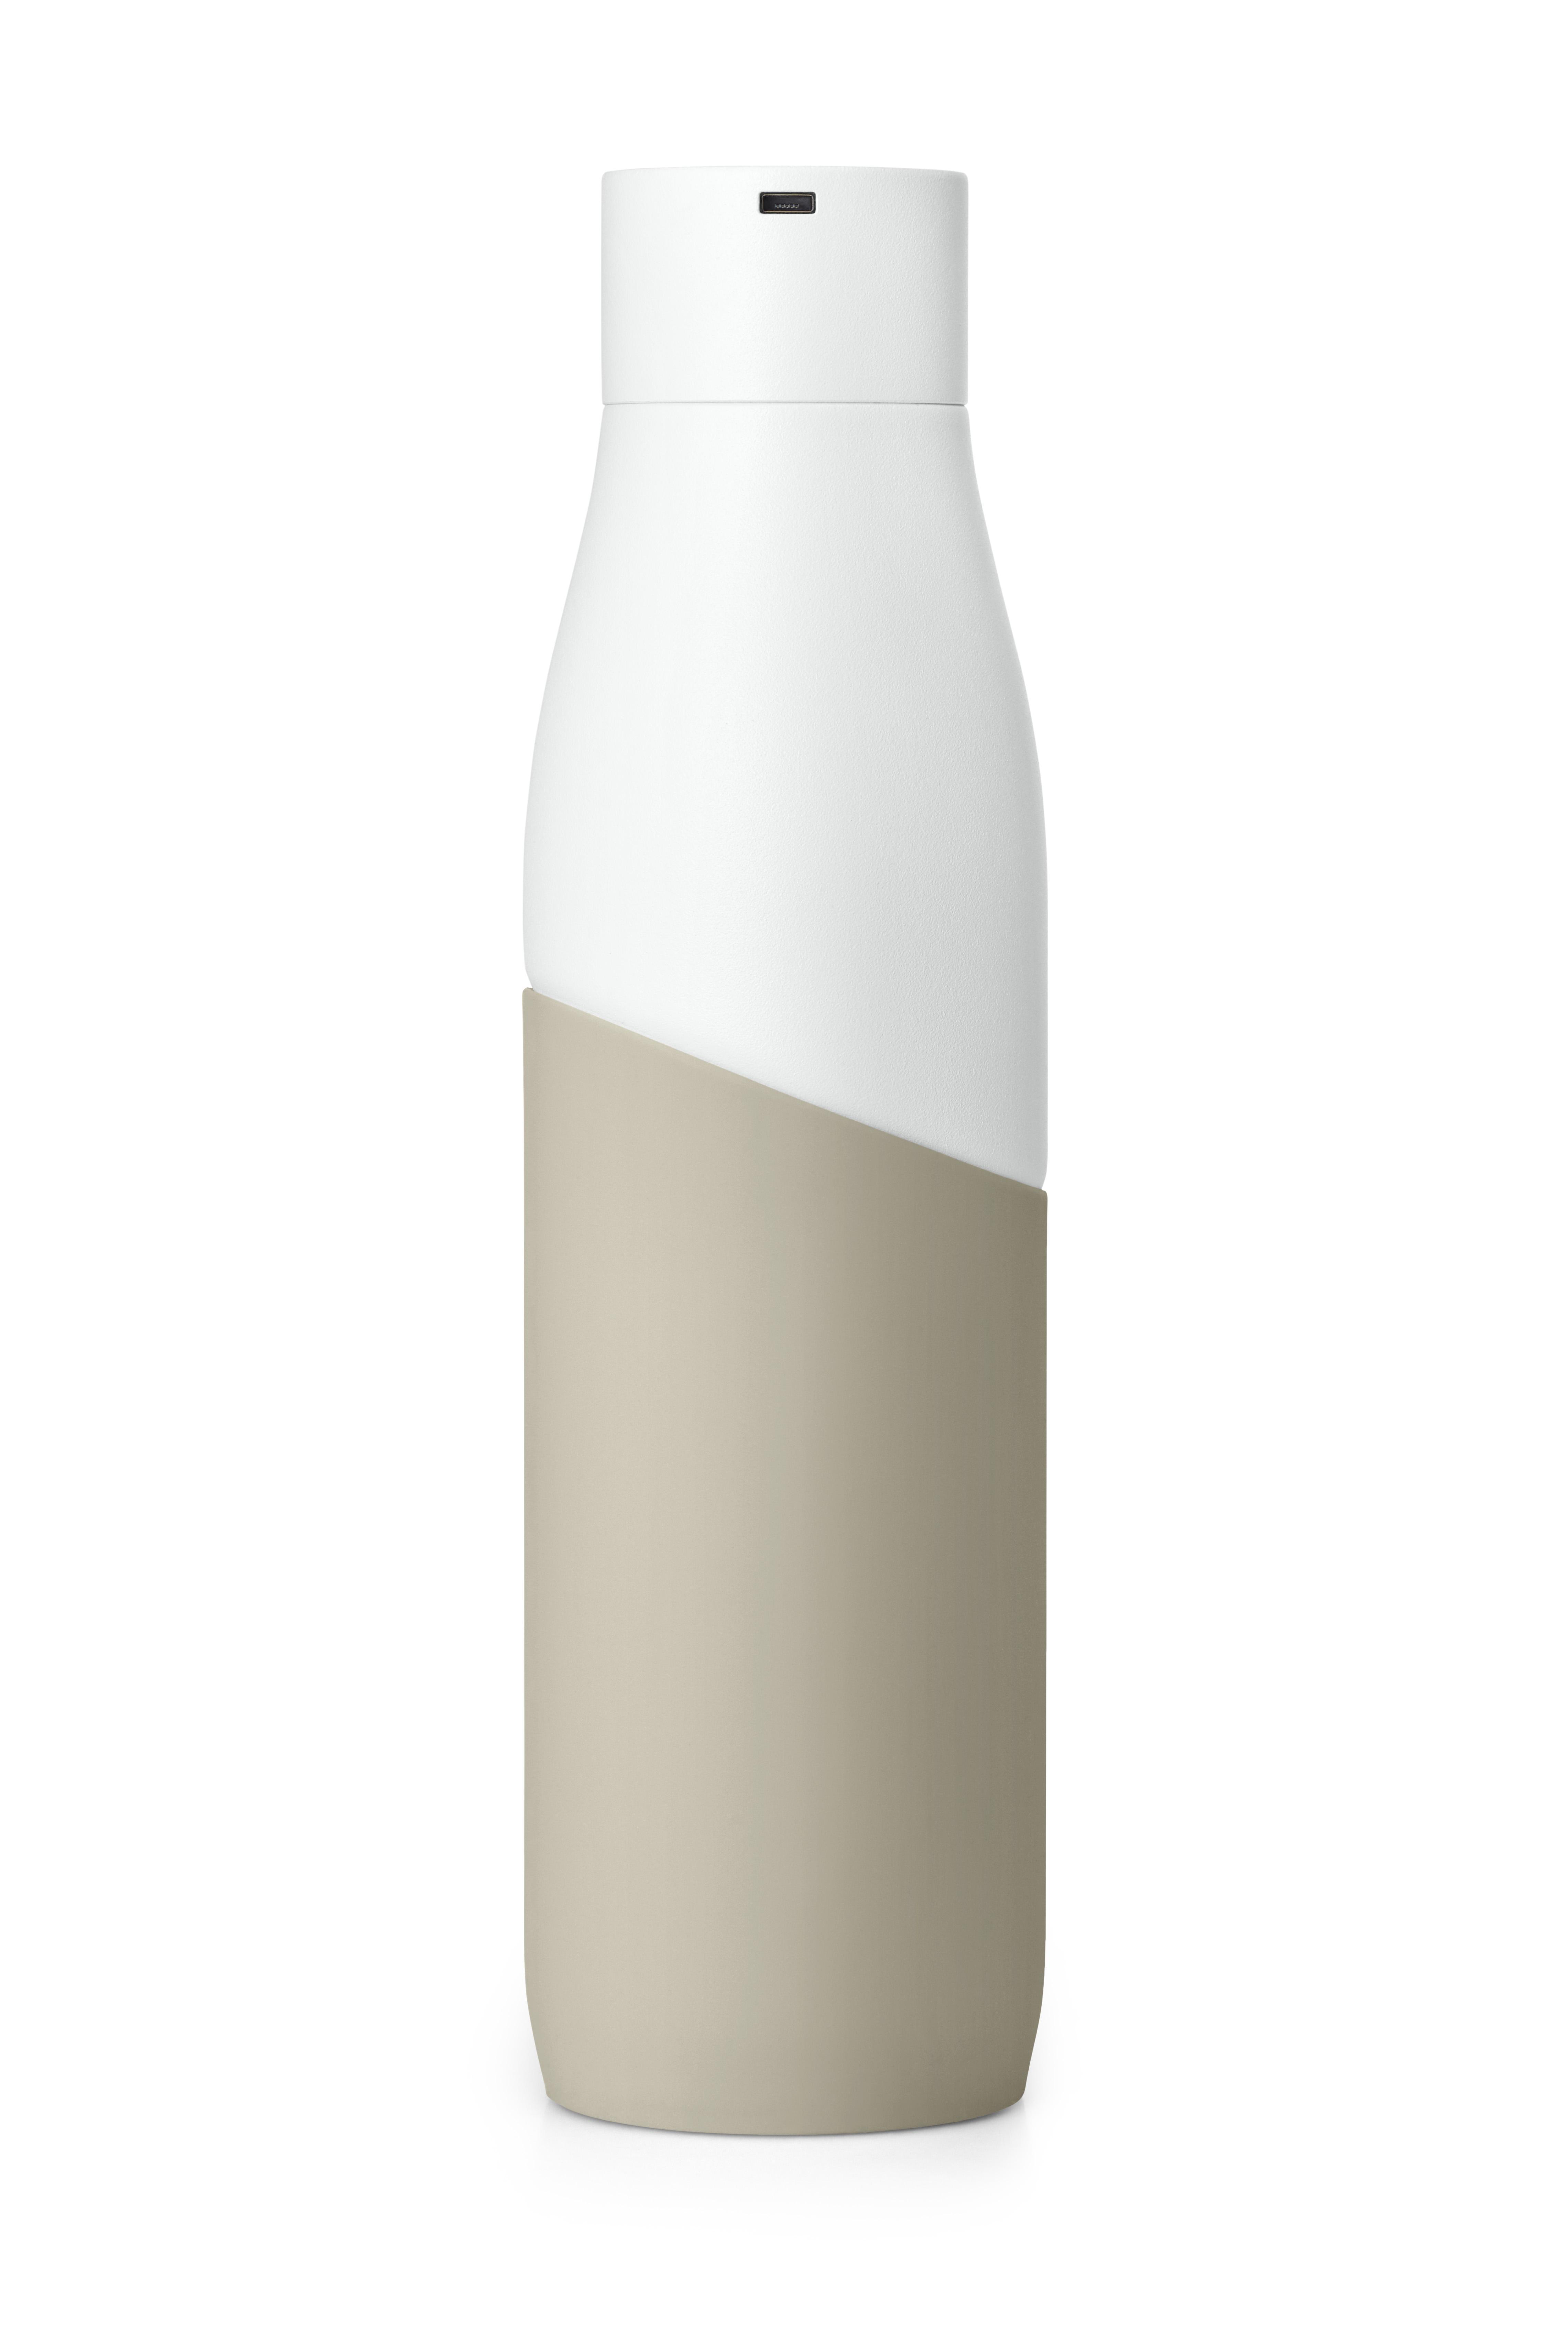 LARQ BSWD095A Bottle white/Dune Trinkflasche Terra Movement edition